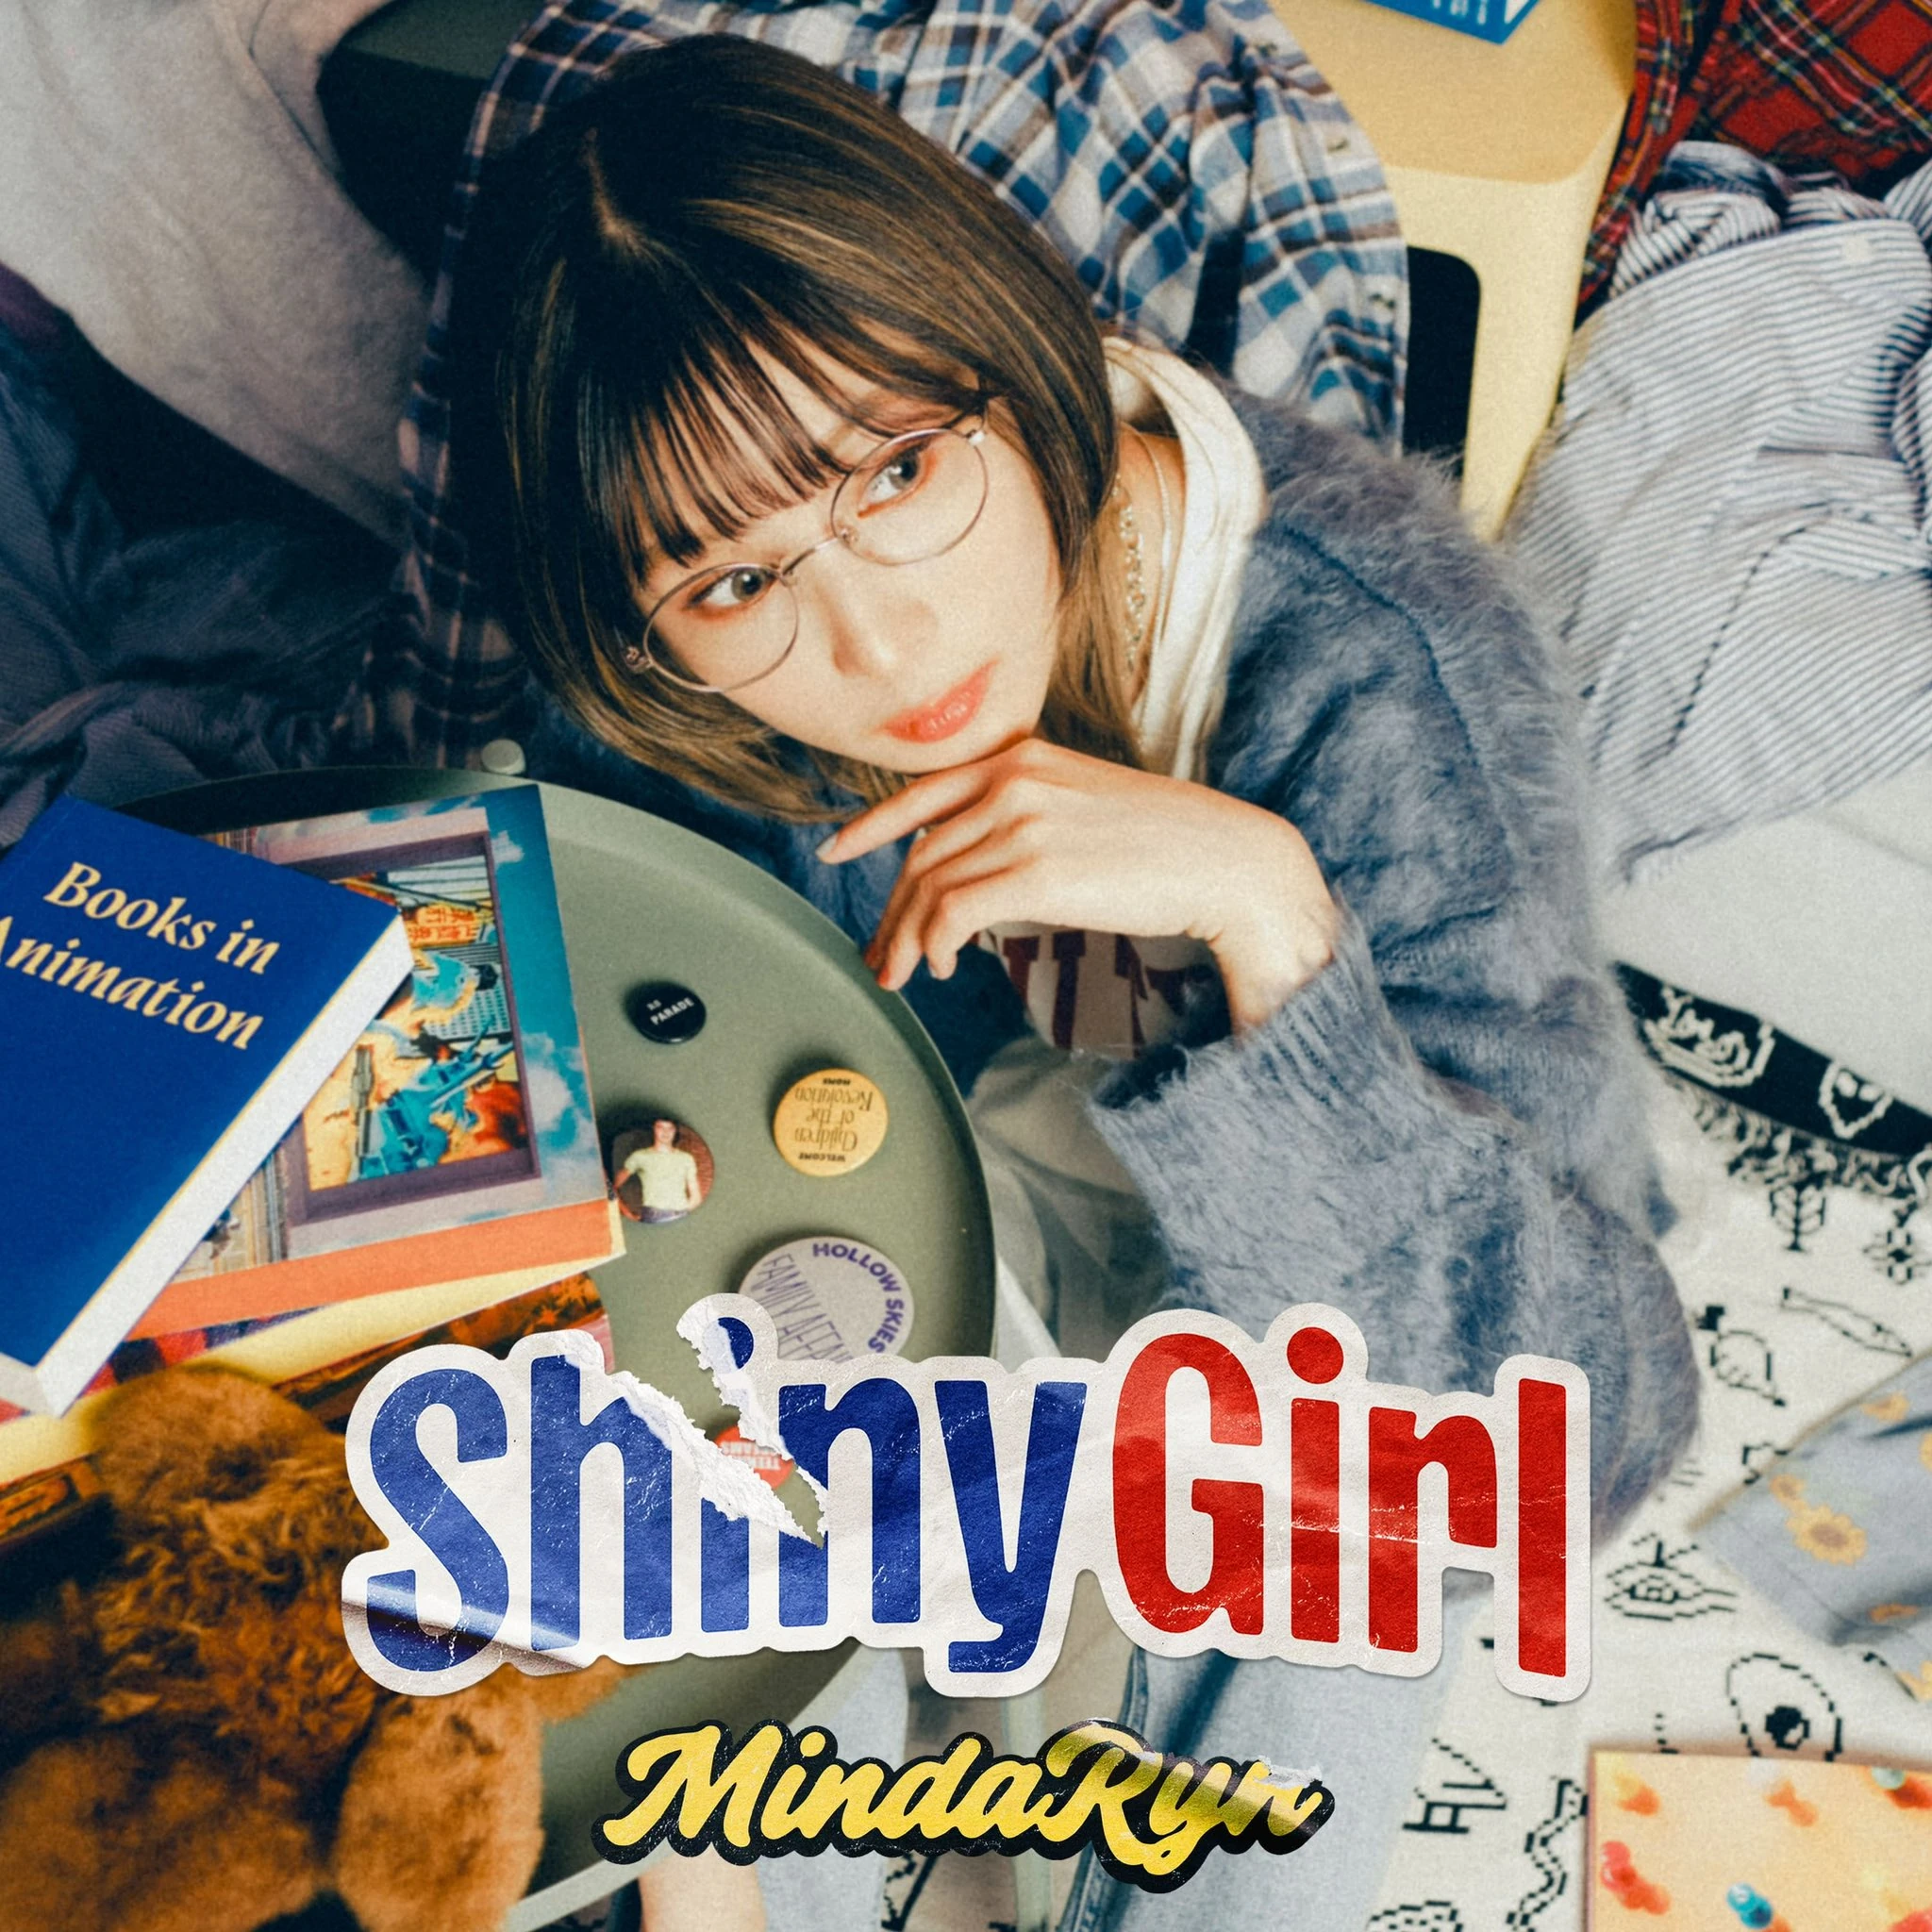 MindaRyn — Shiny Girl cover artwork